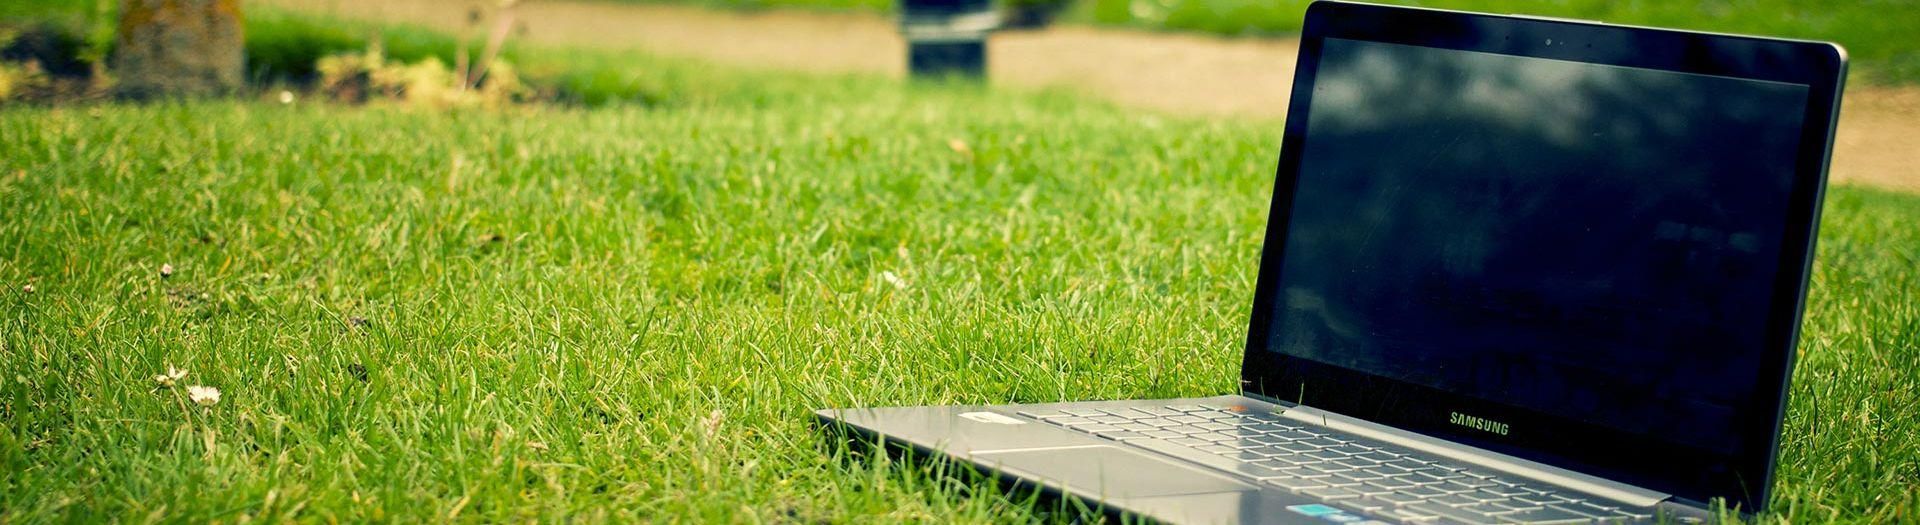 laptop-notebook-grass-meadow-9b558d75 PC Software